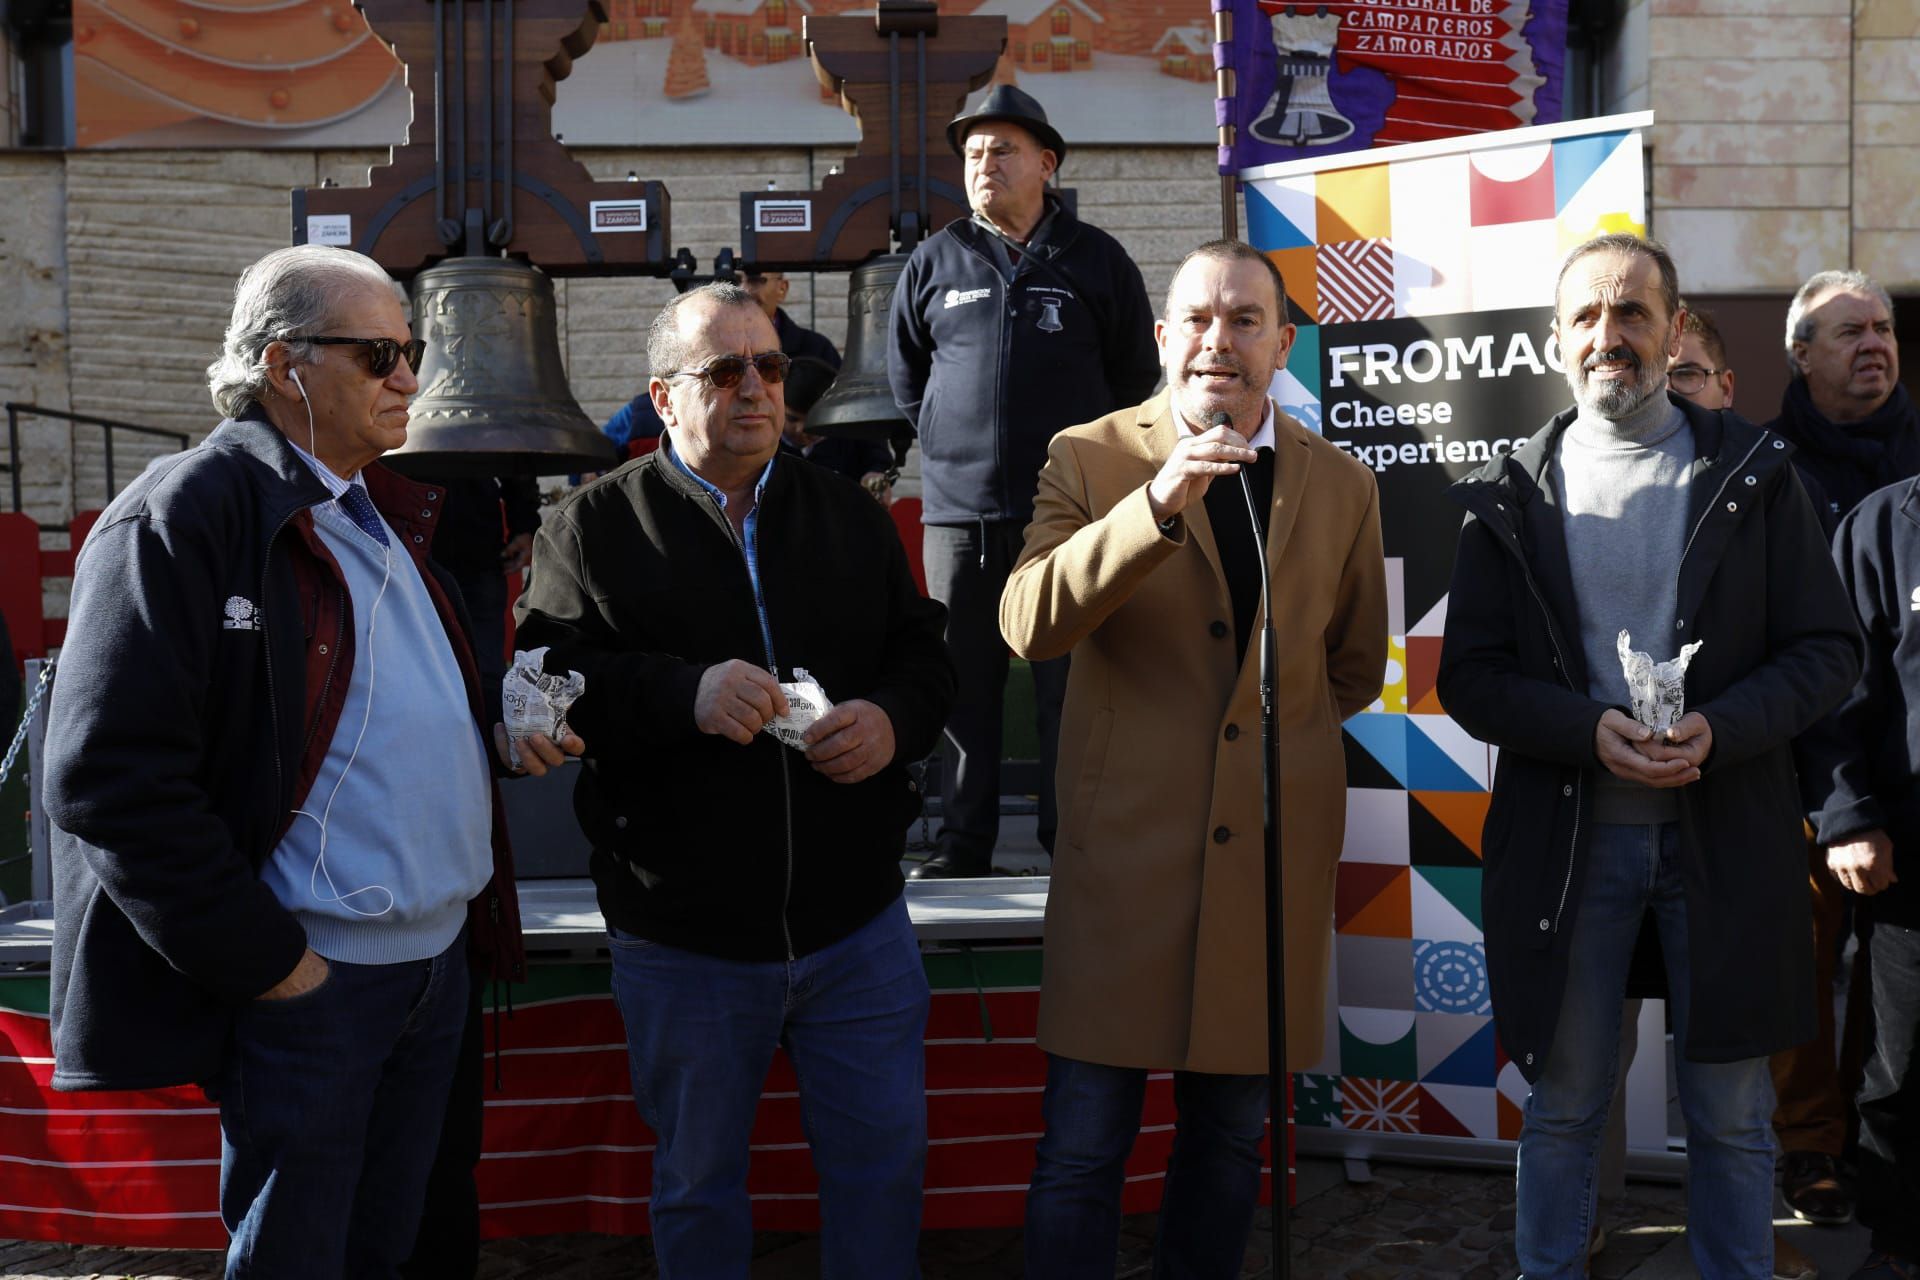 GALERÍA | Las 12 campanadas de Fromago en Zamora, en imágnes